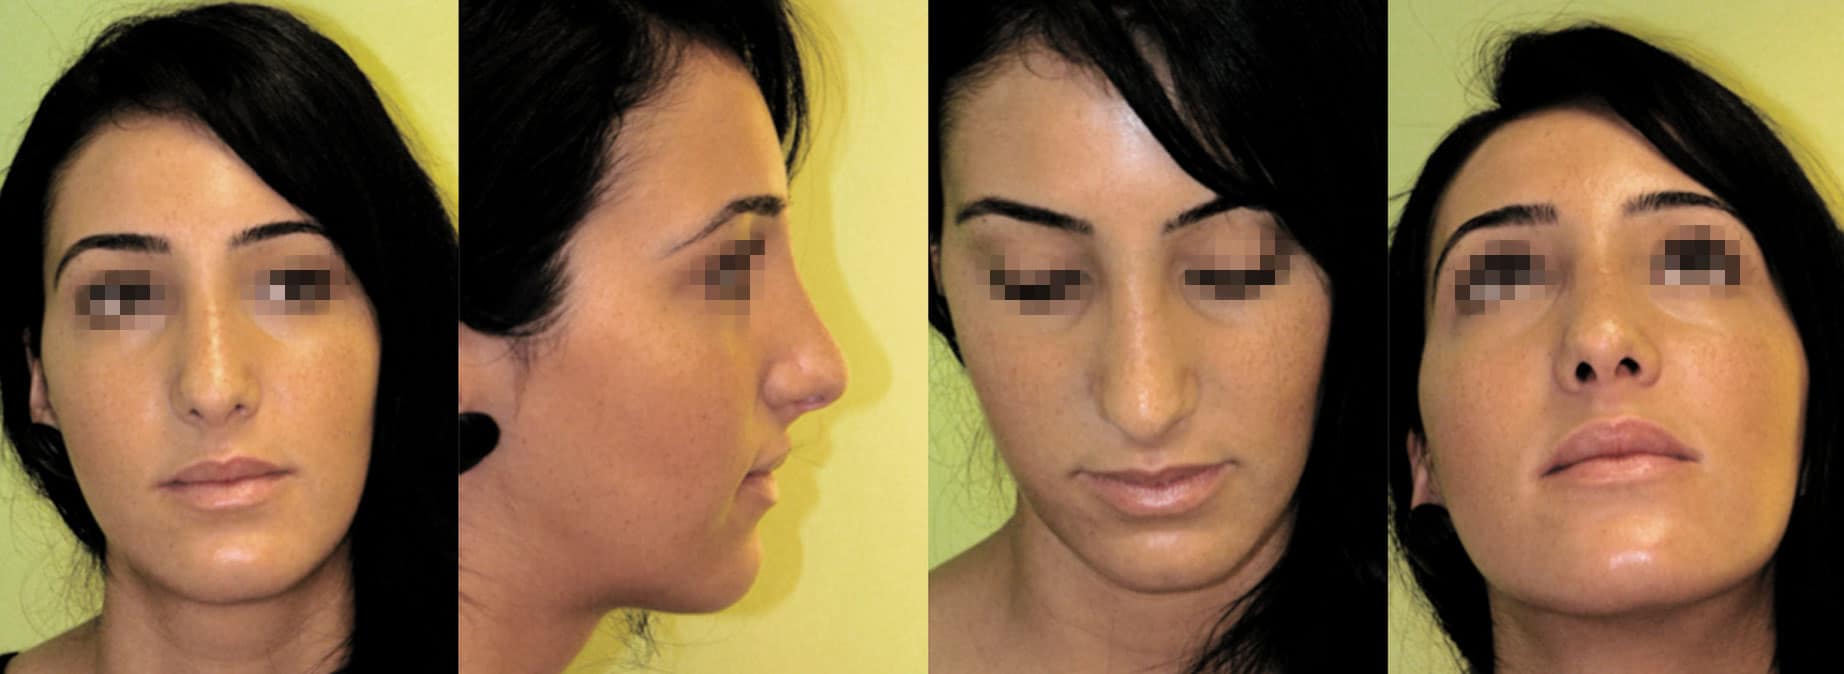 Rhinoplastik, Ästhetische Nasenkorrekturen, Spaltnasenkorrekturen